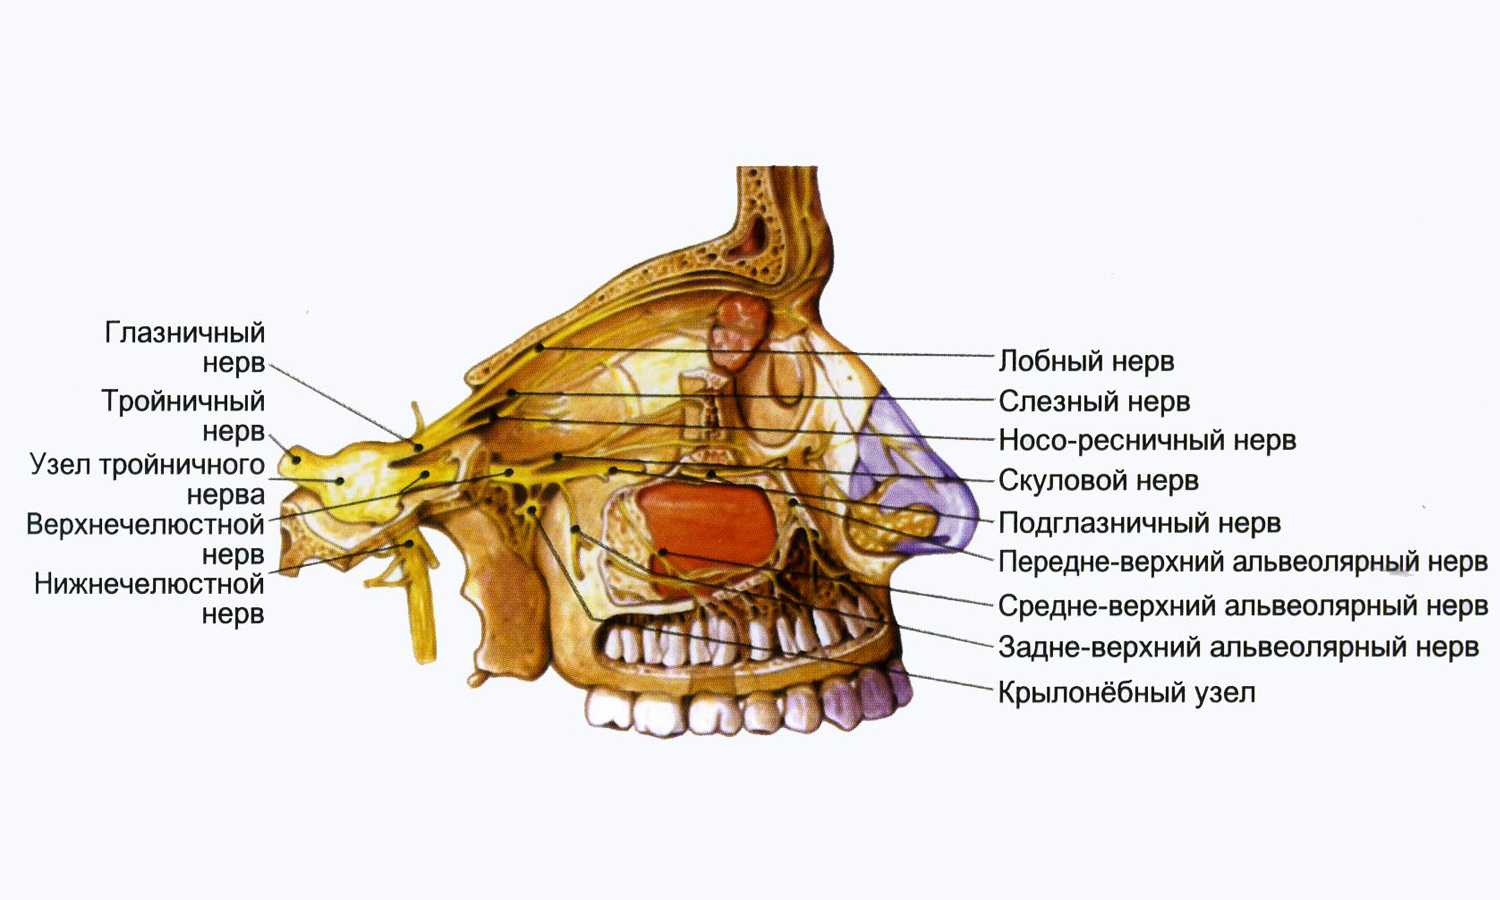 Нервы лицевого черепа. Крылонебный узел тройничного нерва. Ветви тройничного нерва анатомия. Анатомия глазной ветви тройничного нерва. Лицевая ветвь тройничного нерва.